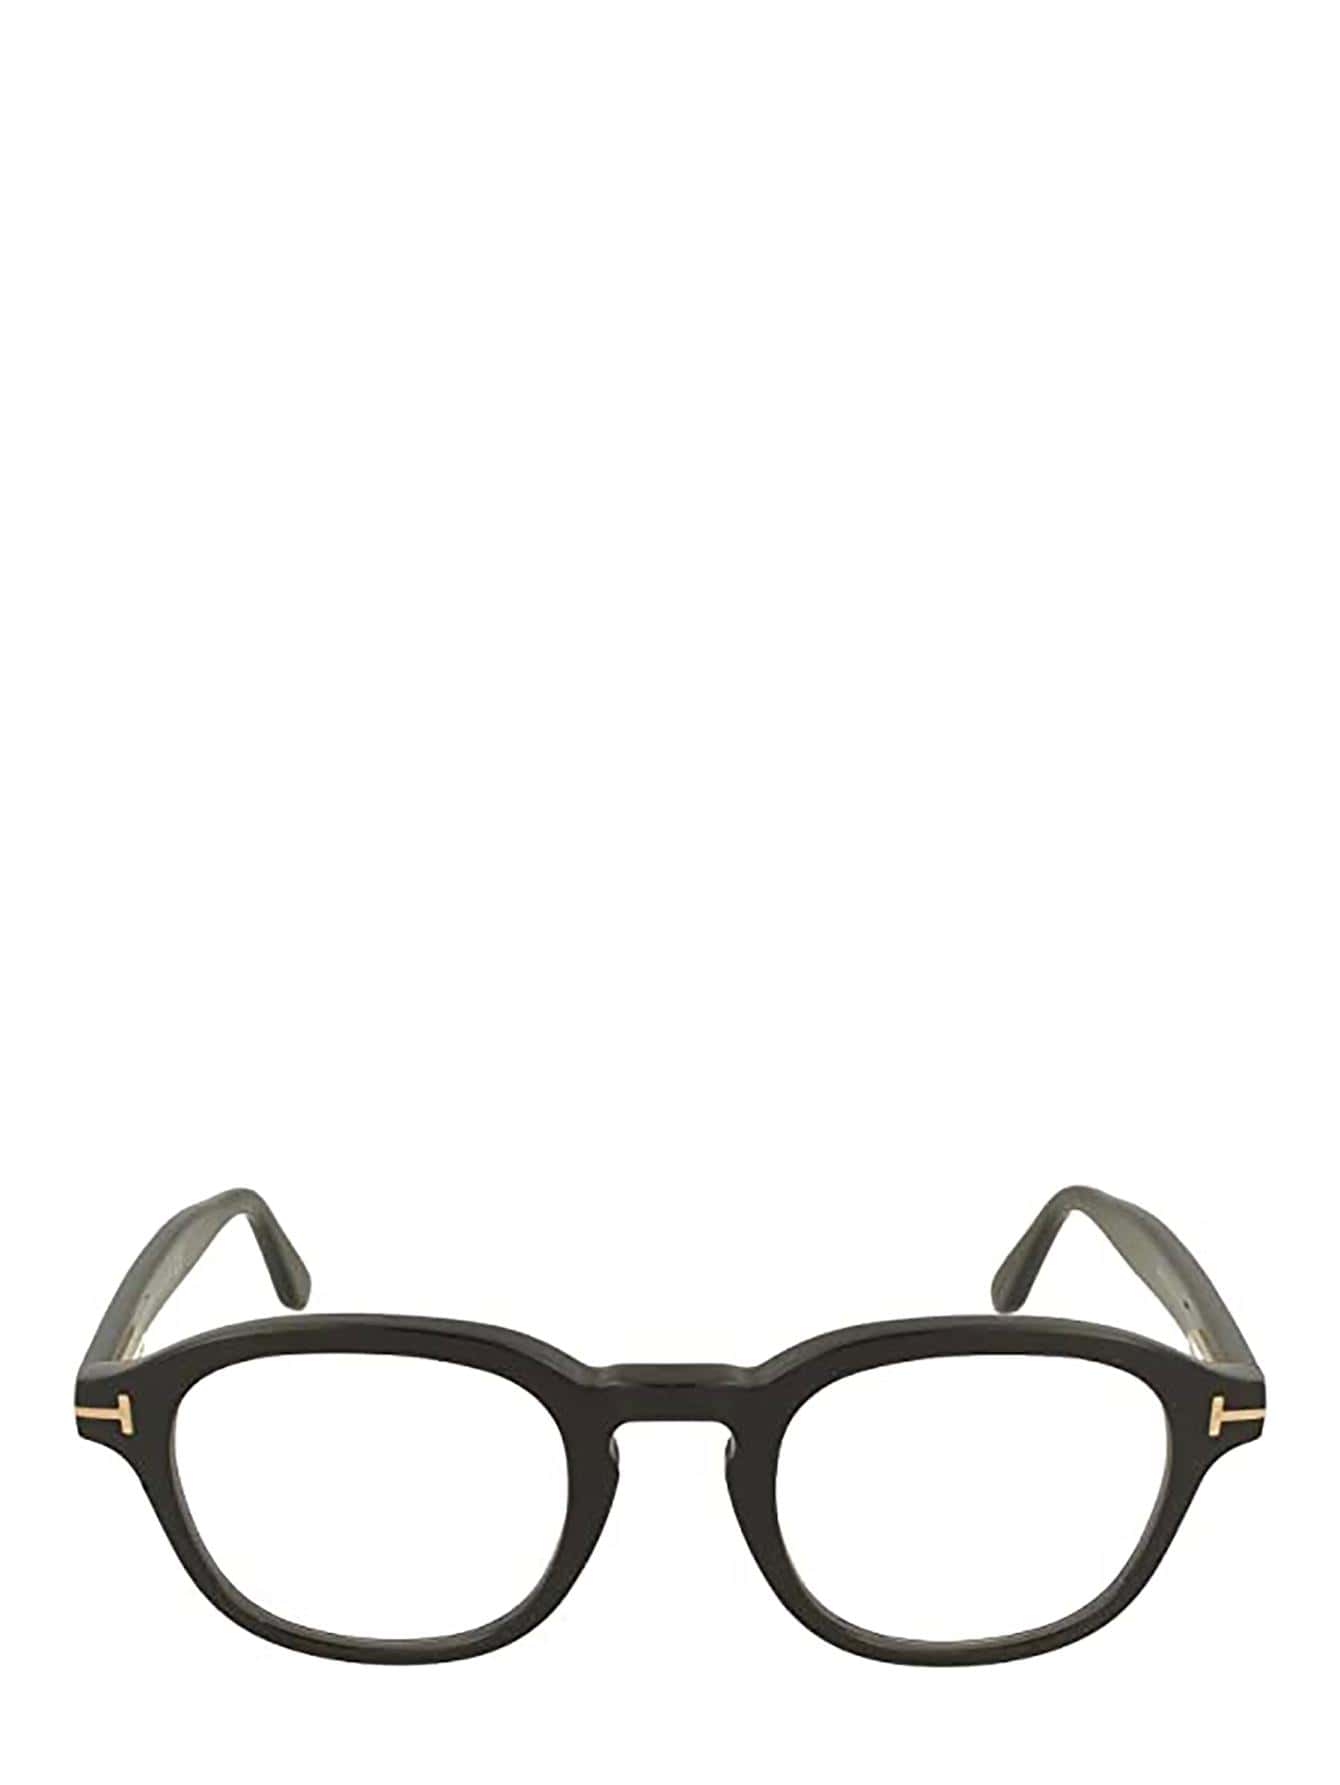 Мужские солнцезащитные очки Tom Ford ЧЕРНЫЕ FT5698B001, черный солнцезащитные очки tom ford квадратные оправа пластик для женщин черепаховый